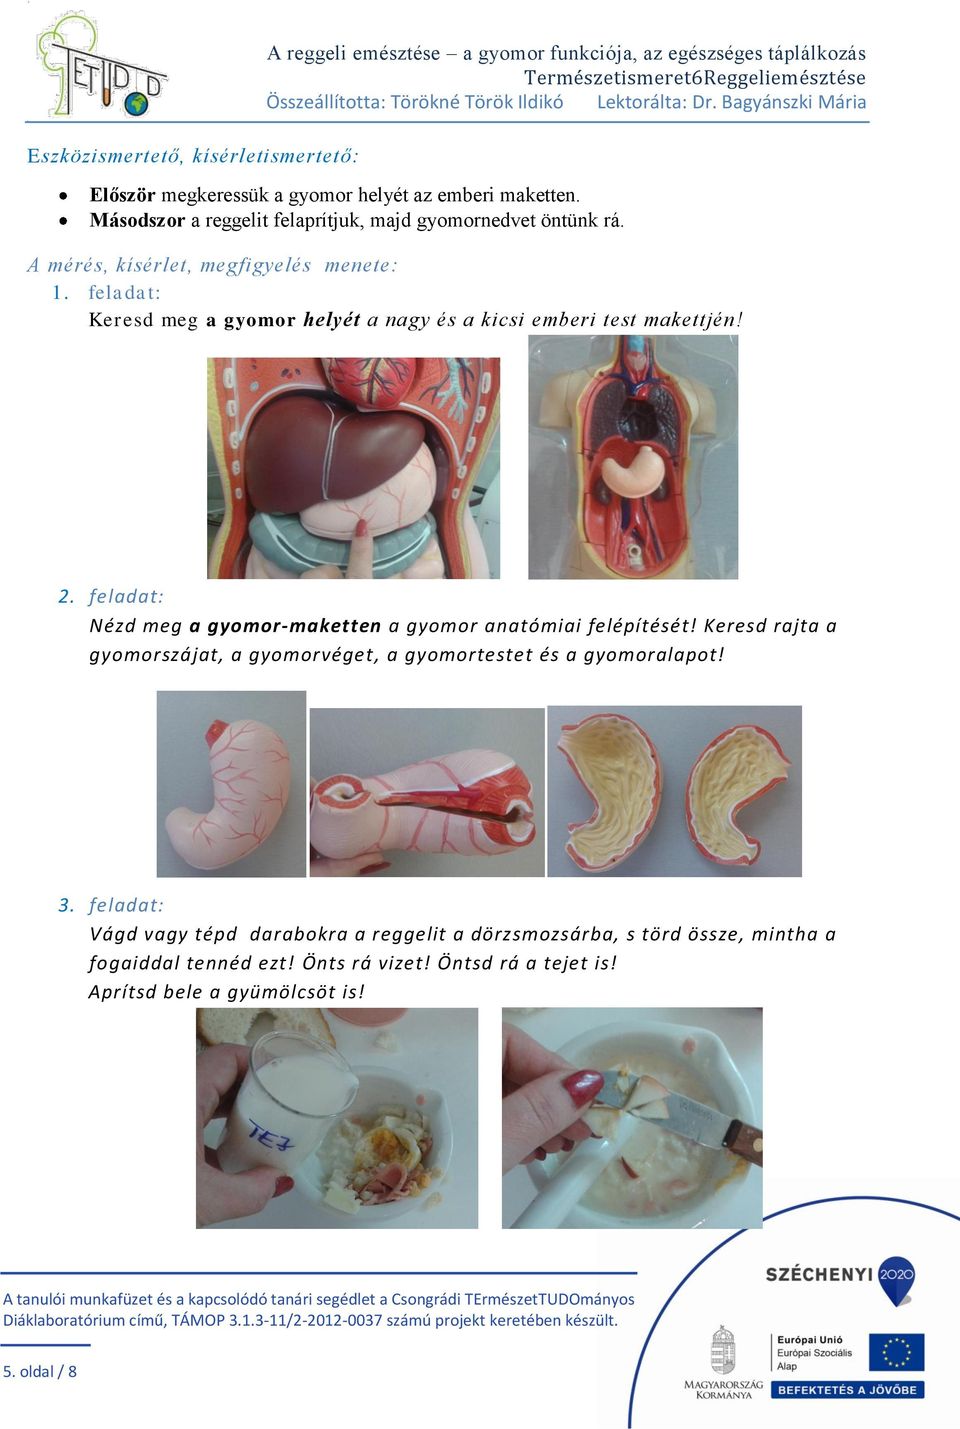 feladat: Keresd meg a gyomor helyét a nagy és a kicsi emberi test makettjén! 2. feladat: Nézd meg a gyomor-maketten a gyomor anatómiai felépítését!